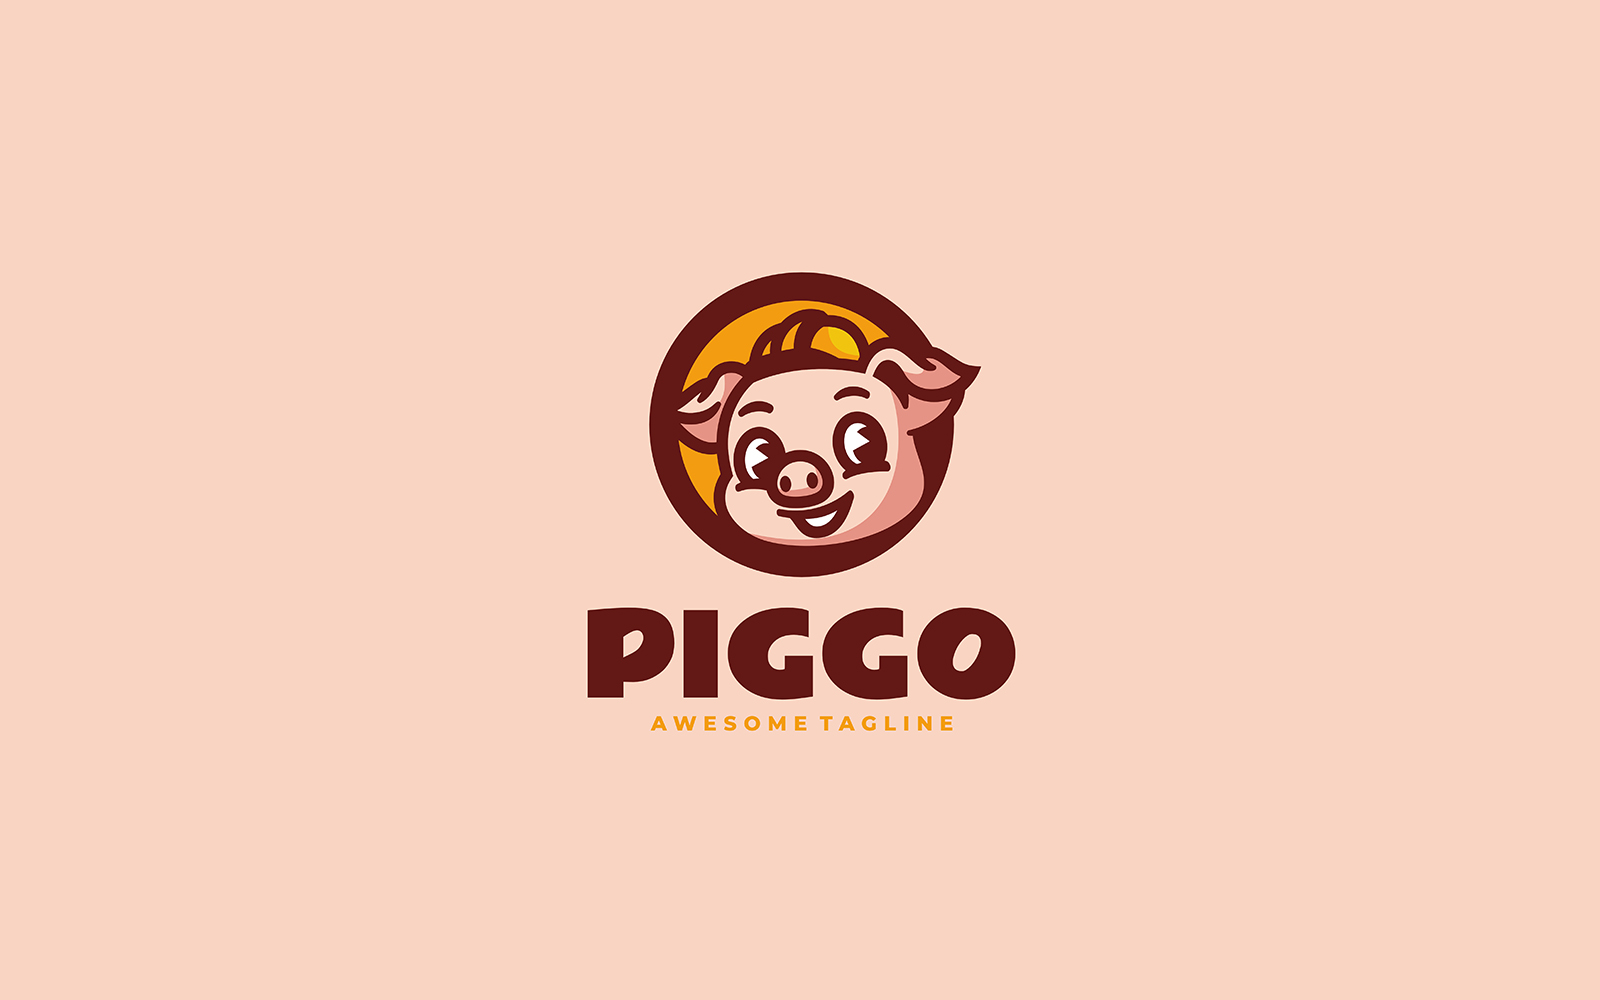 Piggo Mascot Cartoon Logo